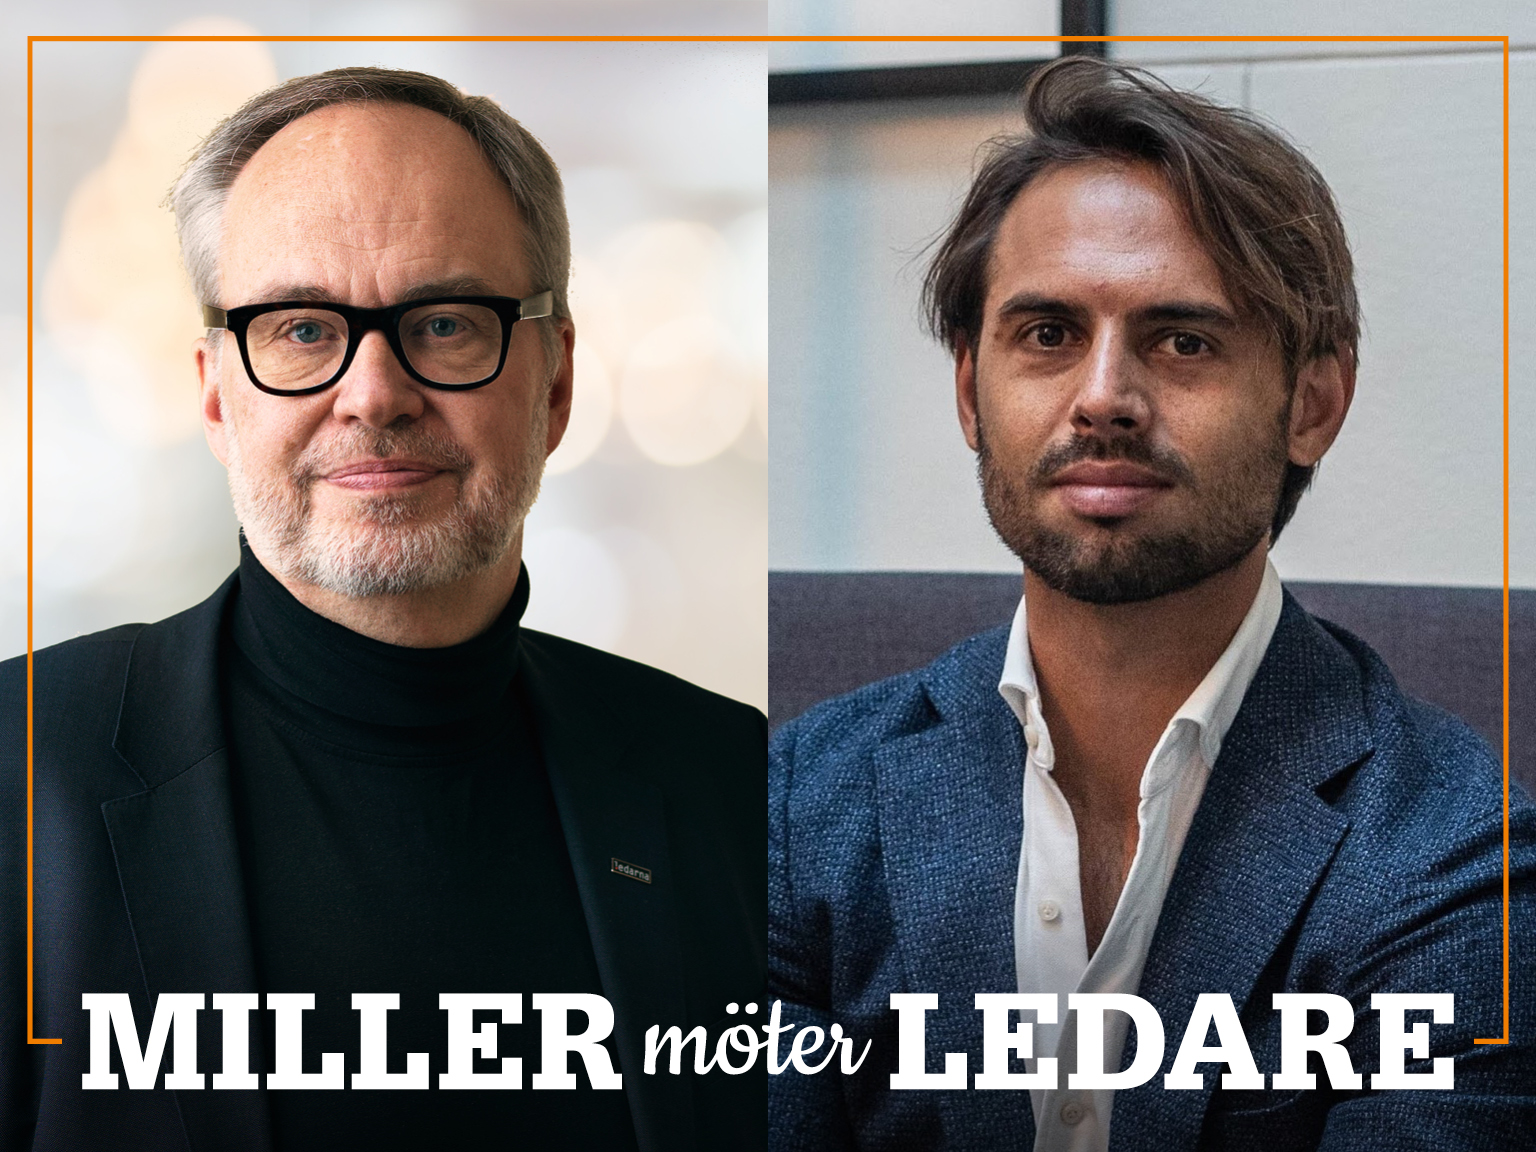 Omslag för podden Miller möter ledare – bild på Andreas Miller och Nicolas Nath.